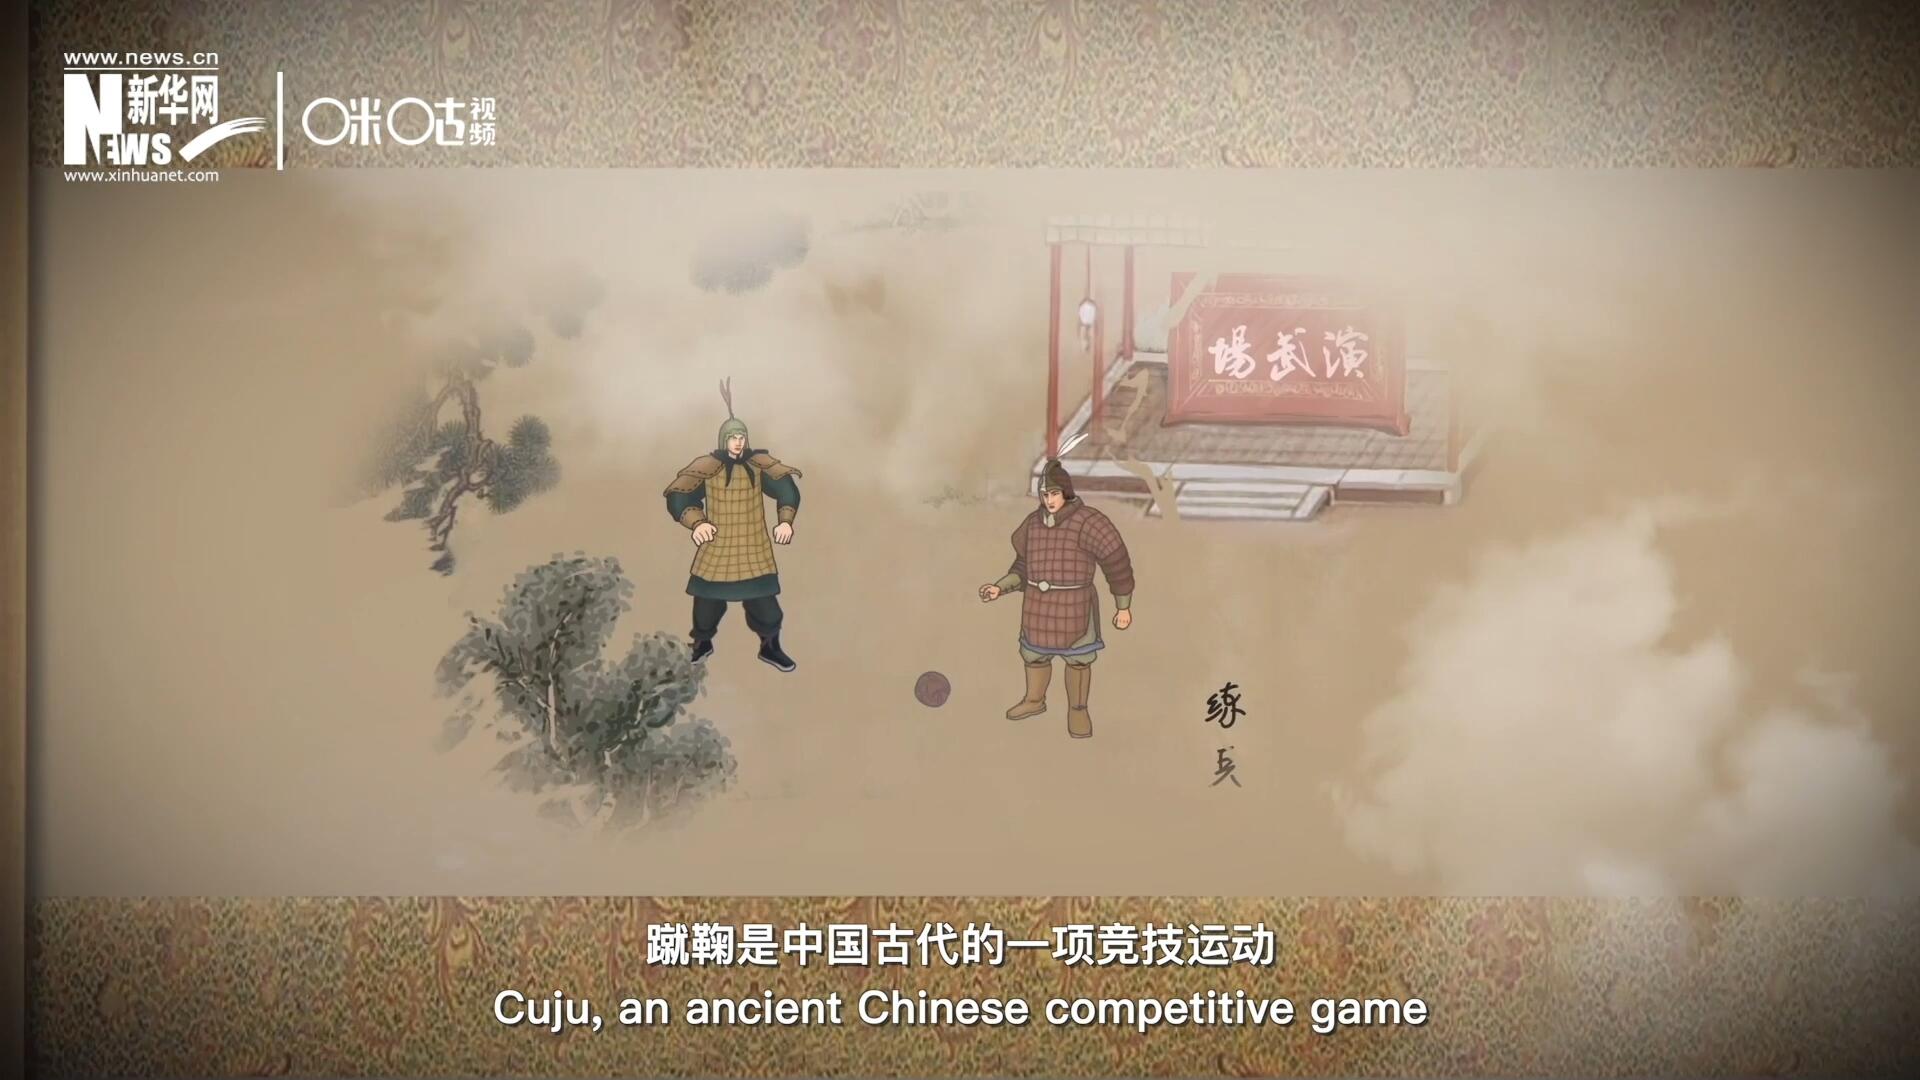 蹴鞠是中国古代的一项竞技运动，其发明之初是用来练兵